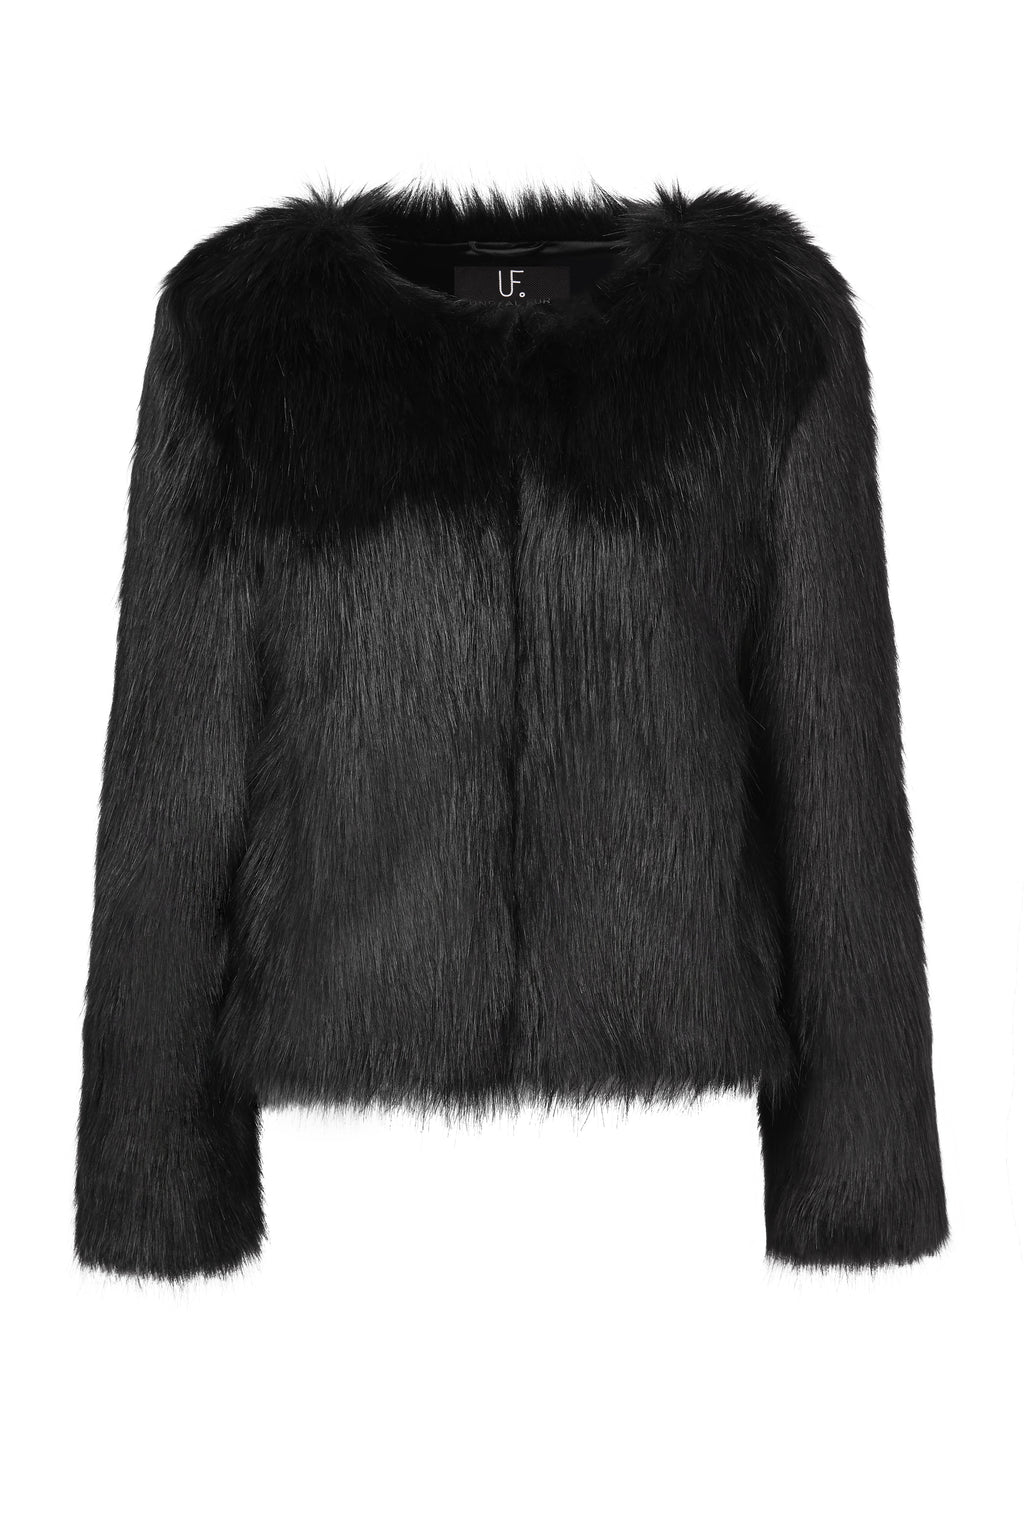 Faux Fur Jackets And Coats Australia | Unreal Fur